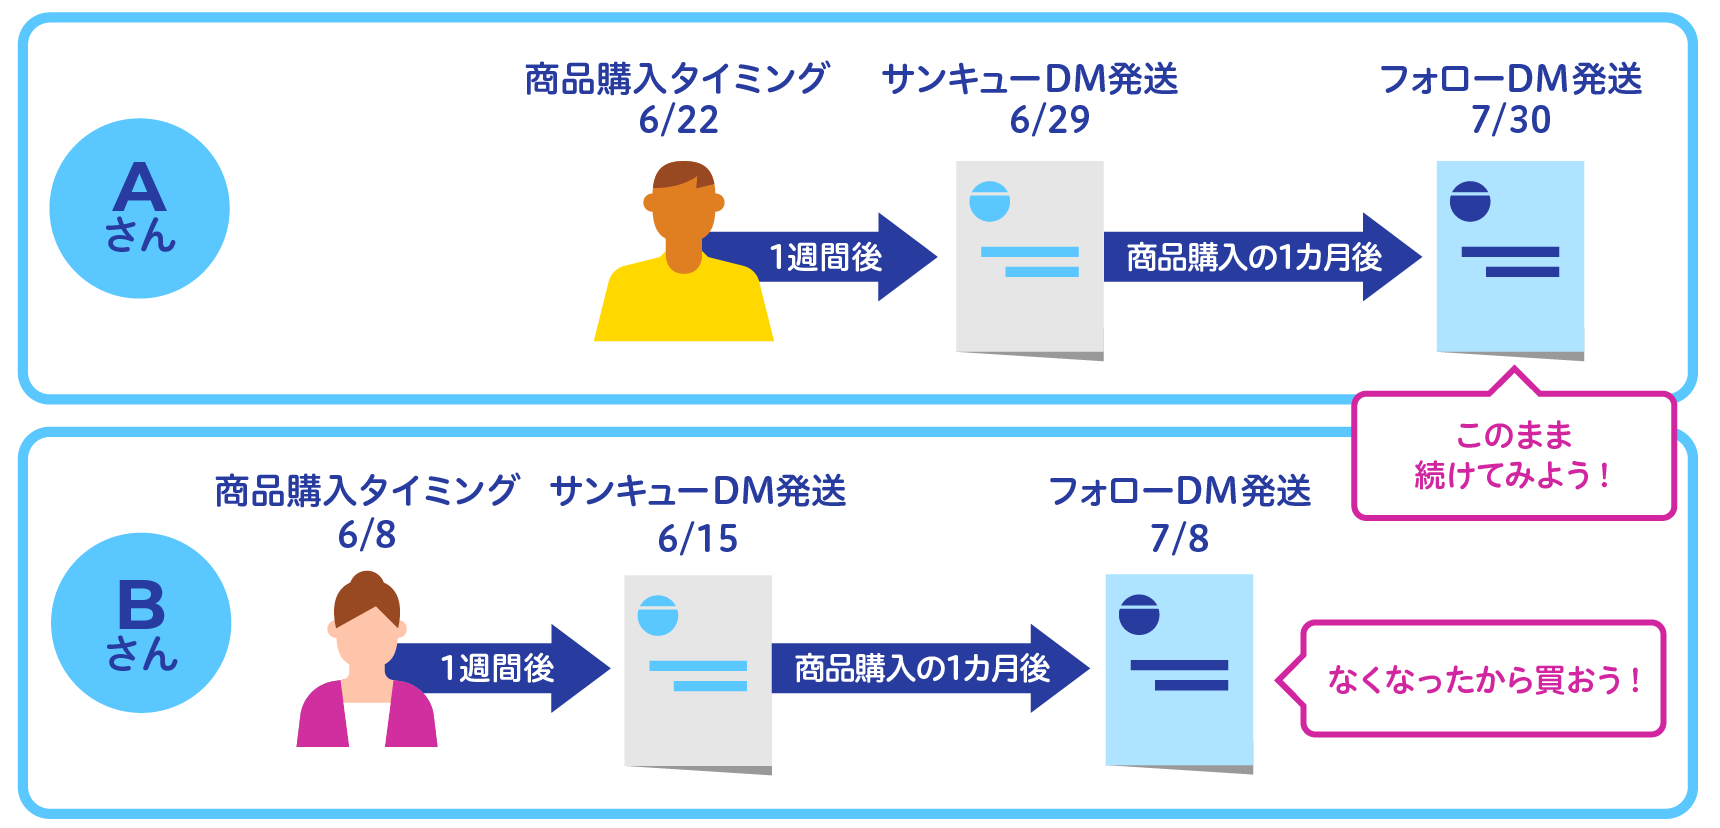 ユーザーの商品購入のタイミングに合わせたDM発送のイメージ図